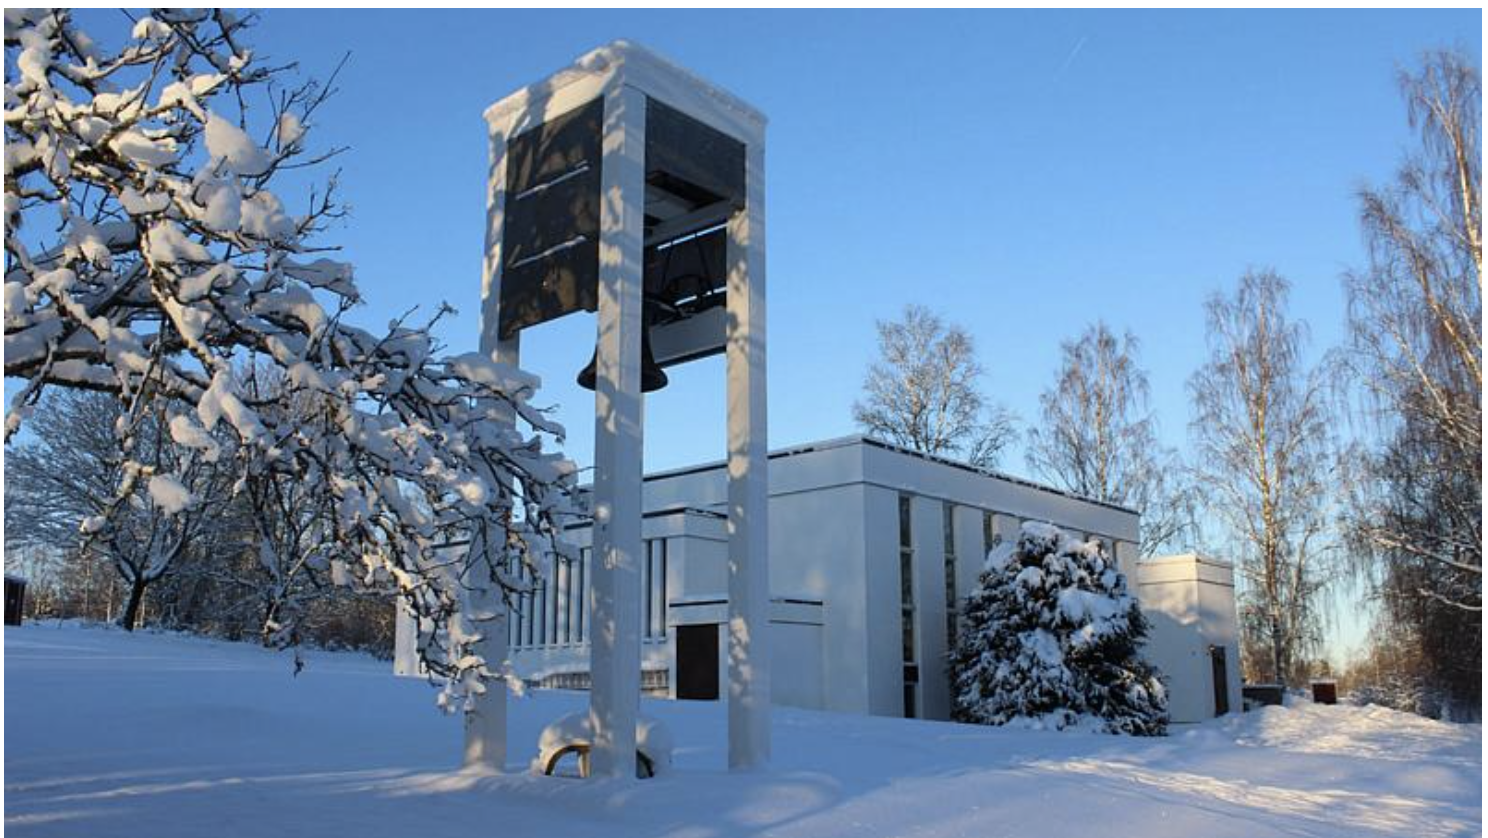 Nyhyttans Adventkyrka i Nyhyttan, Järnboås